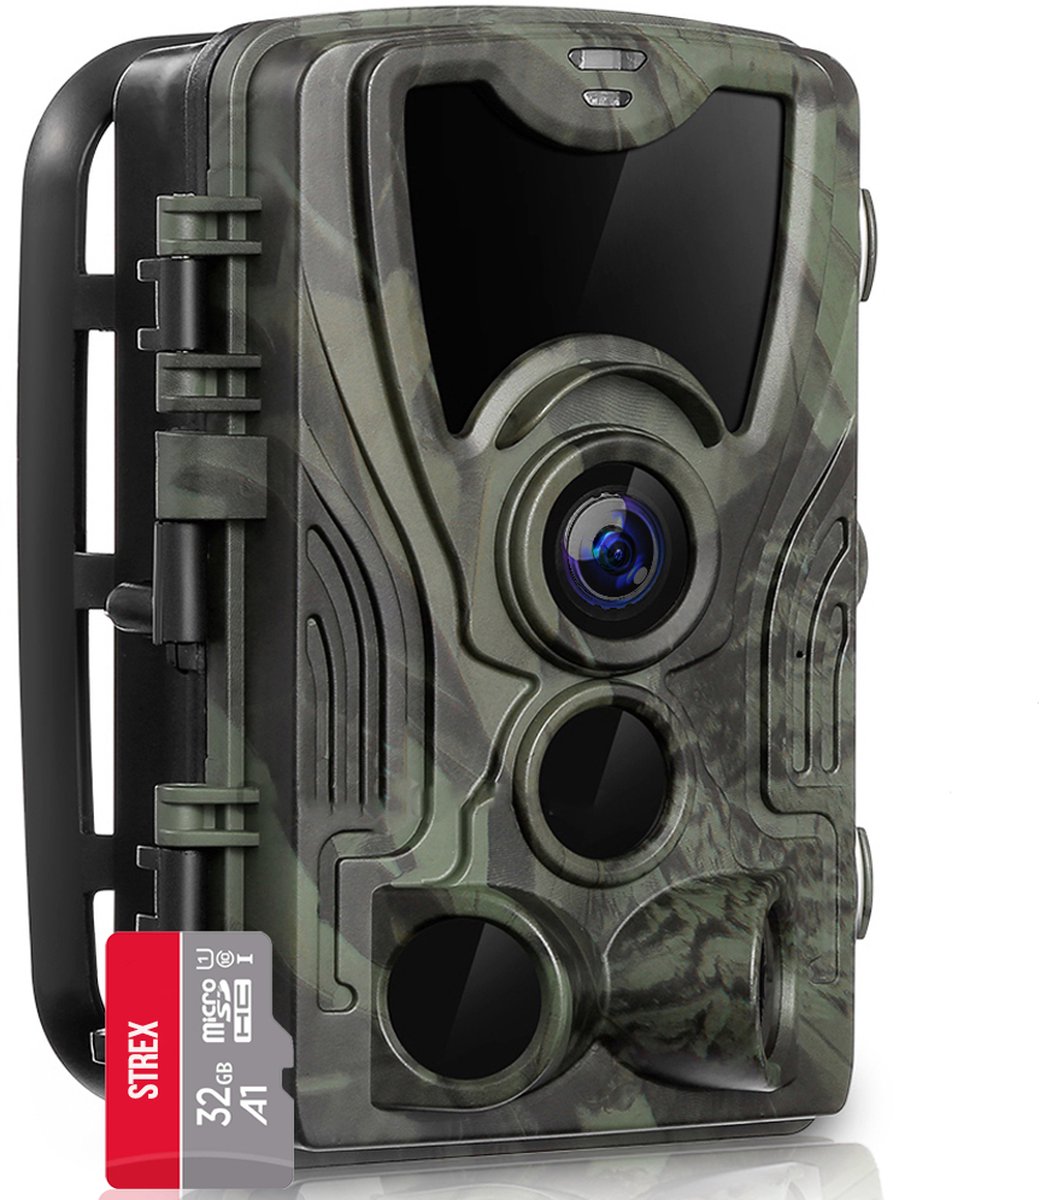 Strex Wildcamera met Nachtzicht - 36MP 4K ULTRA HD - Waterdicht - Incl. 32 GB SD - Wild Camera - Strex